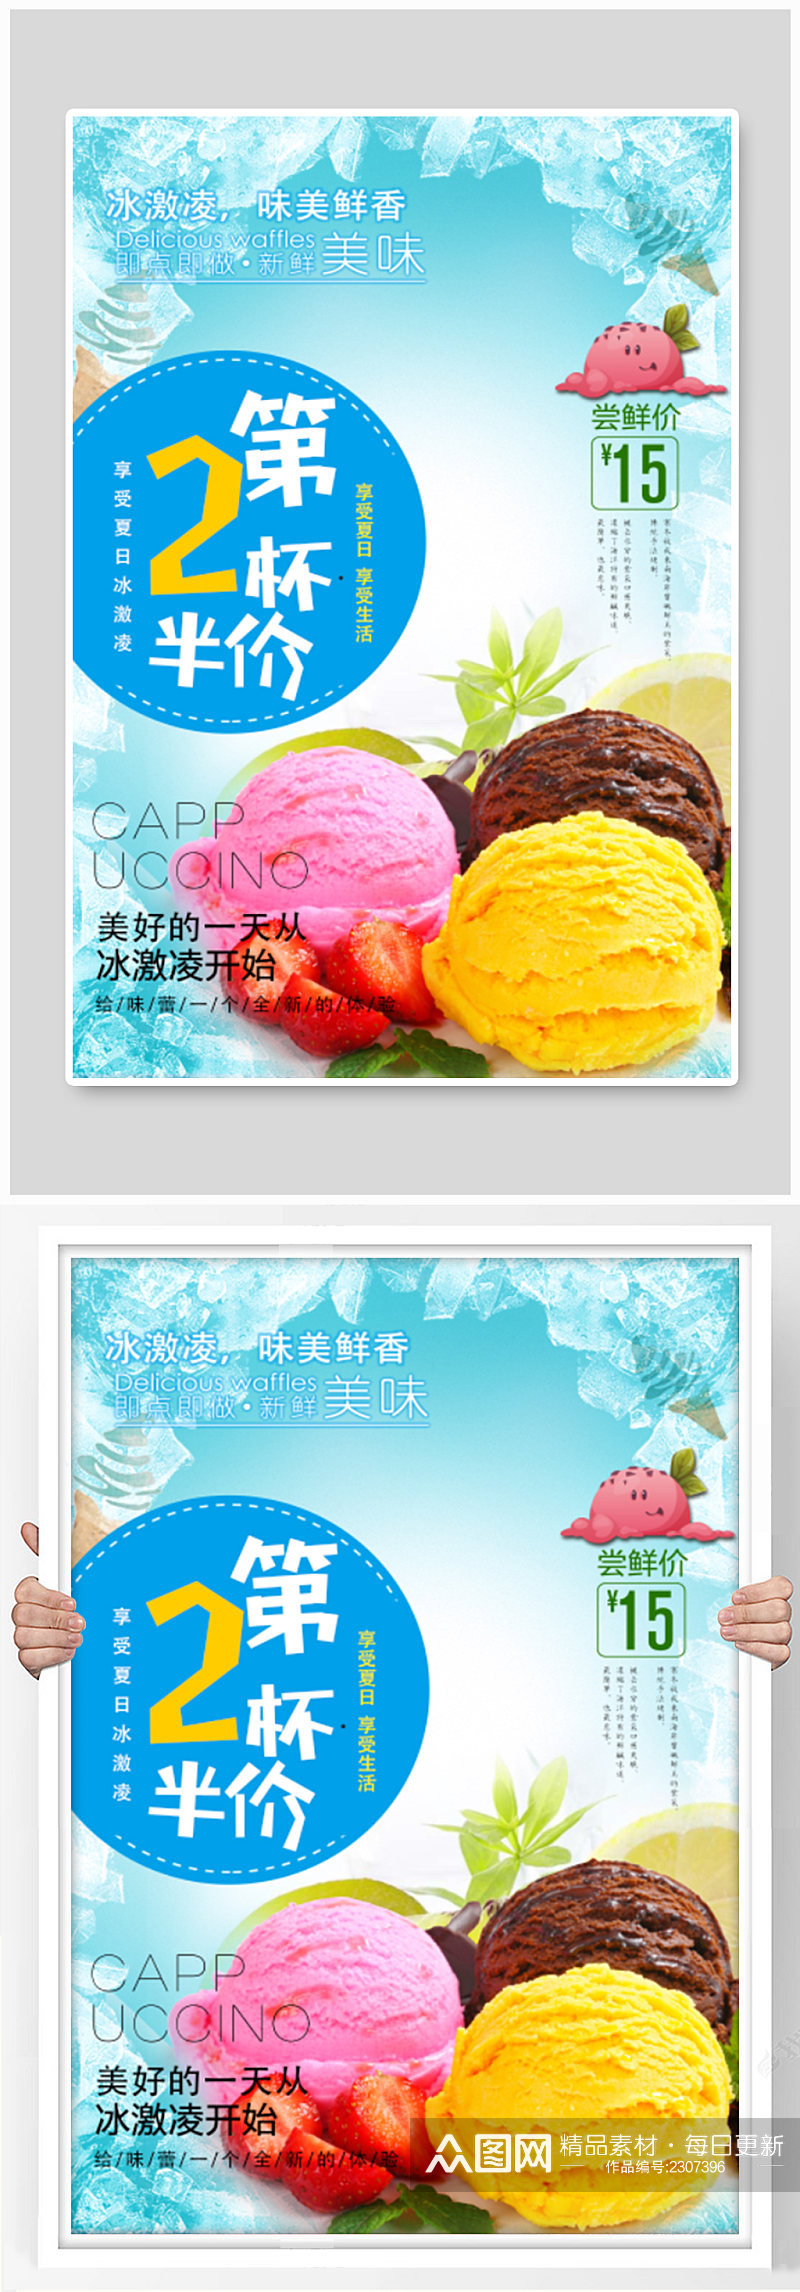 冰淇淋冷饮店促销广告素材